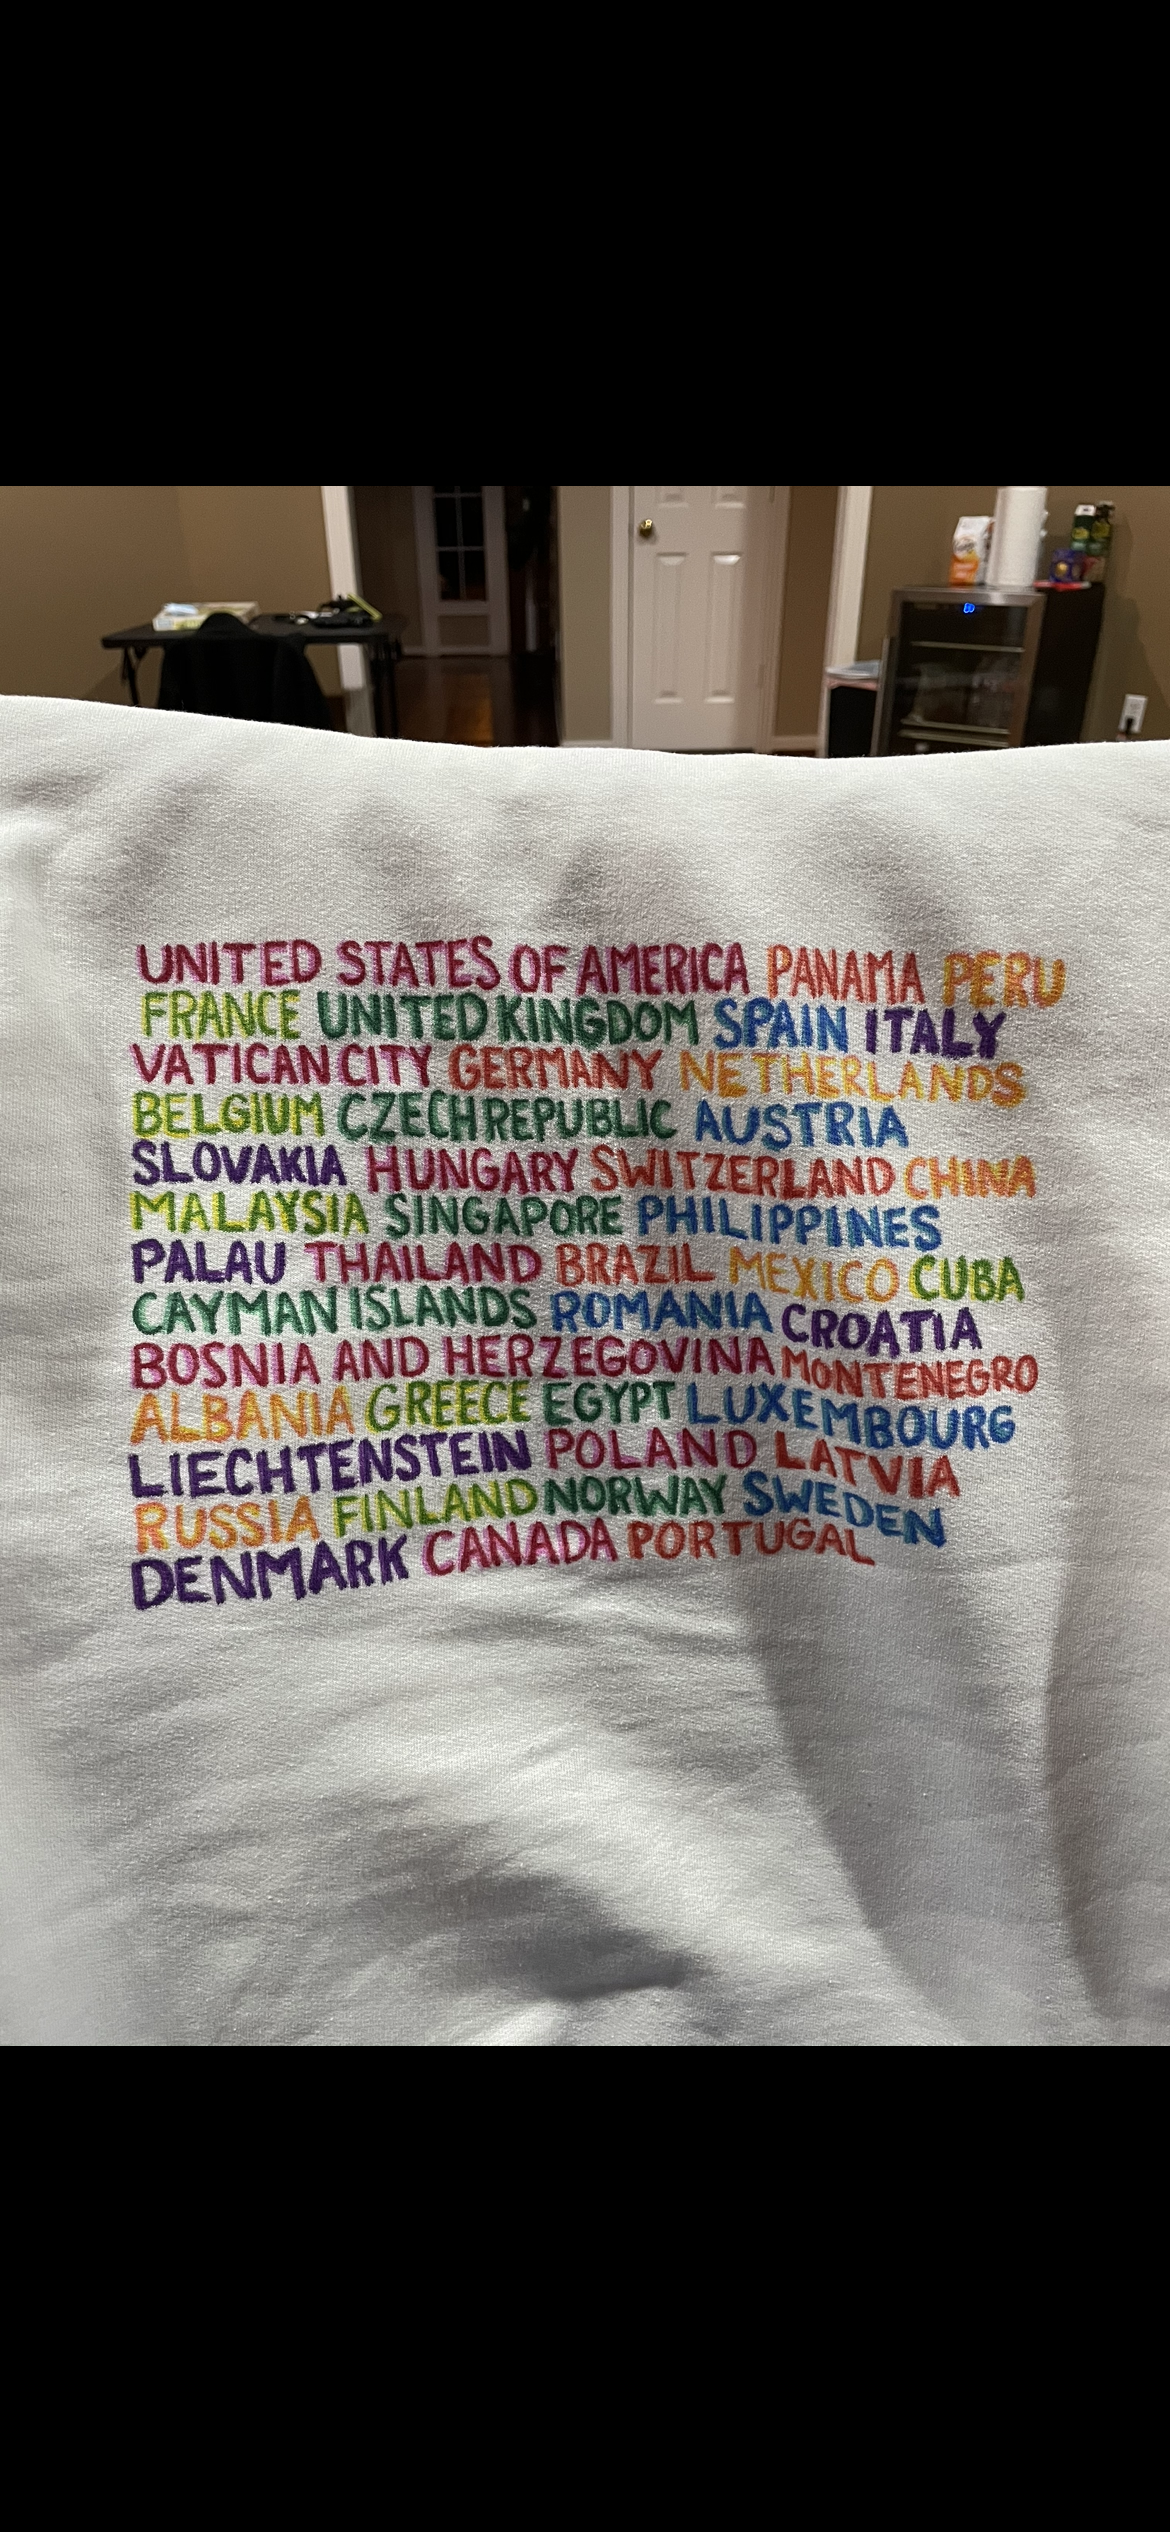 Around the World Sweatshirt